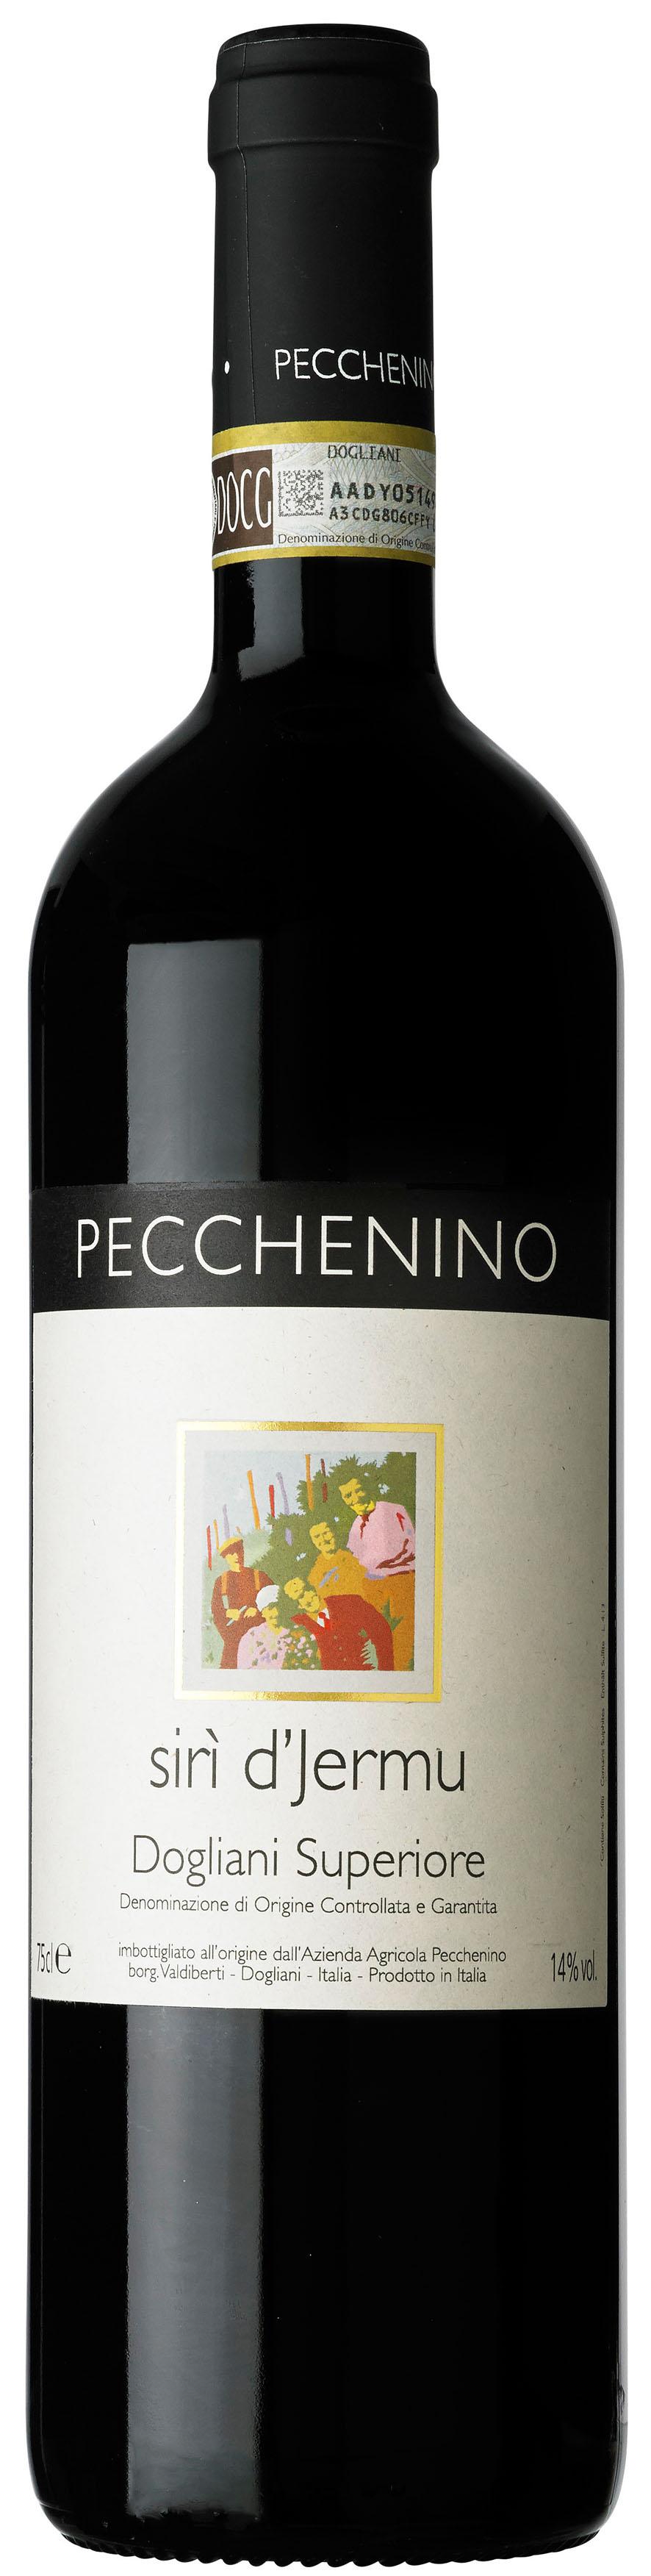 PECCHENINO - Italien, Piemonte Pecchenino Dogliani Superiore Sirì D'Jermu Namnet Sirí betyder "vinodling med excellent exponering" och Jermu är smeknamnet på William som var namnet på bröderna farfar.